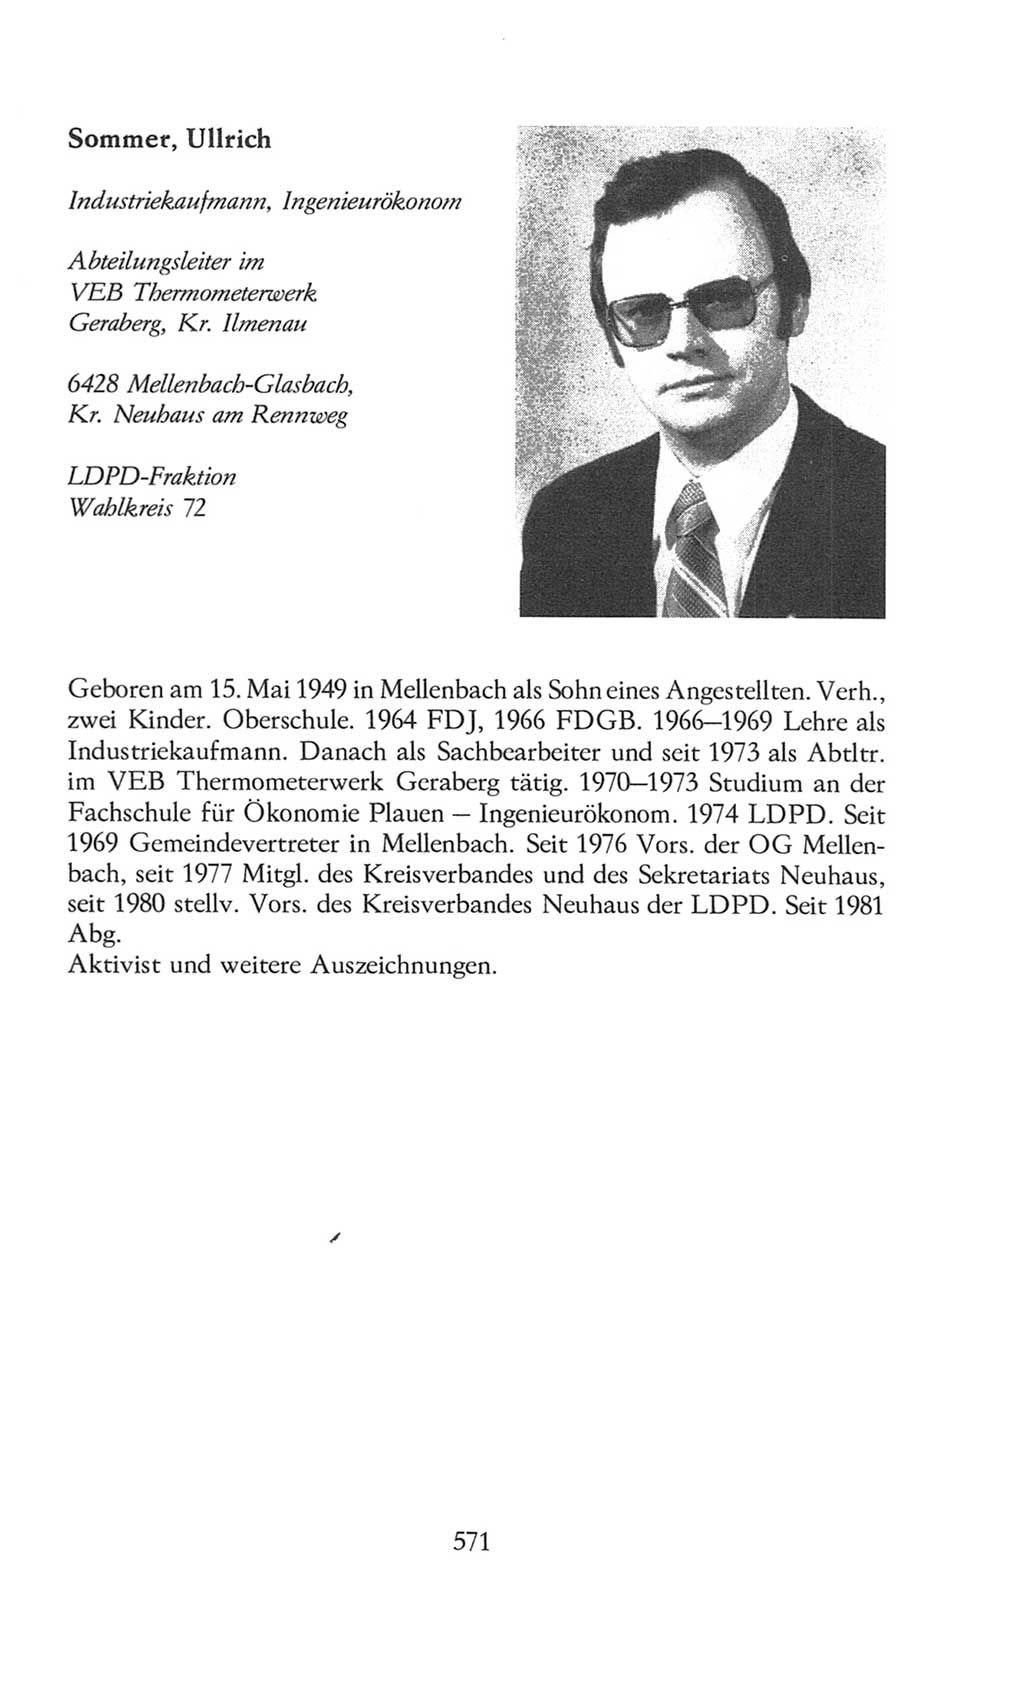 Volkskammer (VK) der Deutschen Demokratischen Republik (DDR), 8. Wahlperiode 1981-1986, Seite 571 (VK. DDR 8. WP. 1981-1986, S. 571)